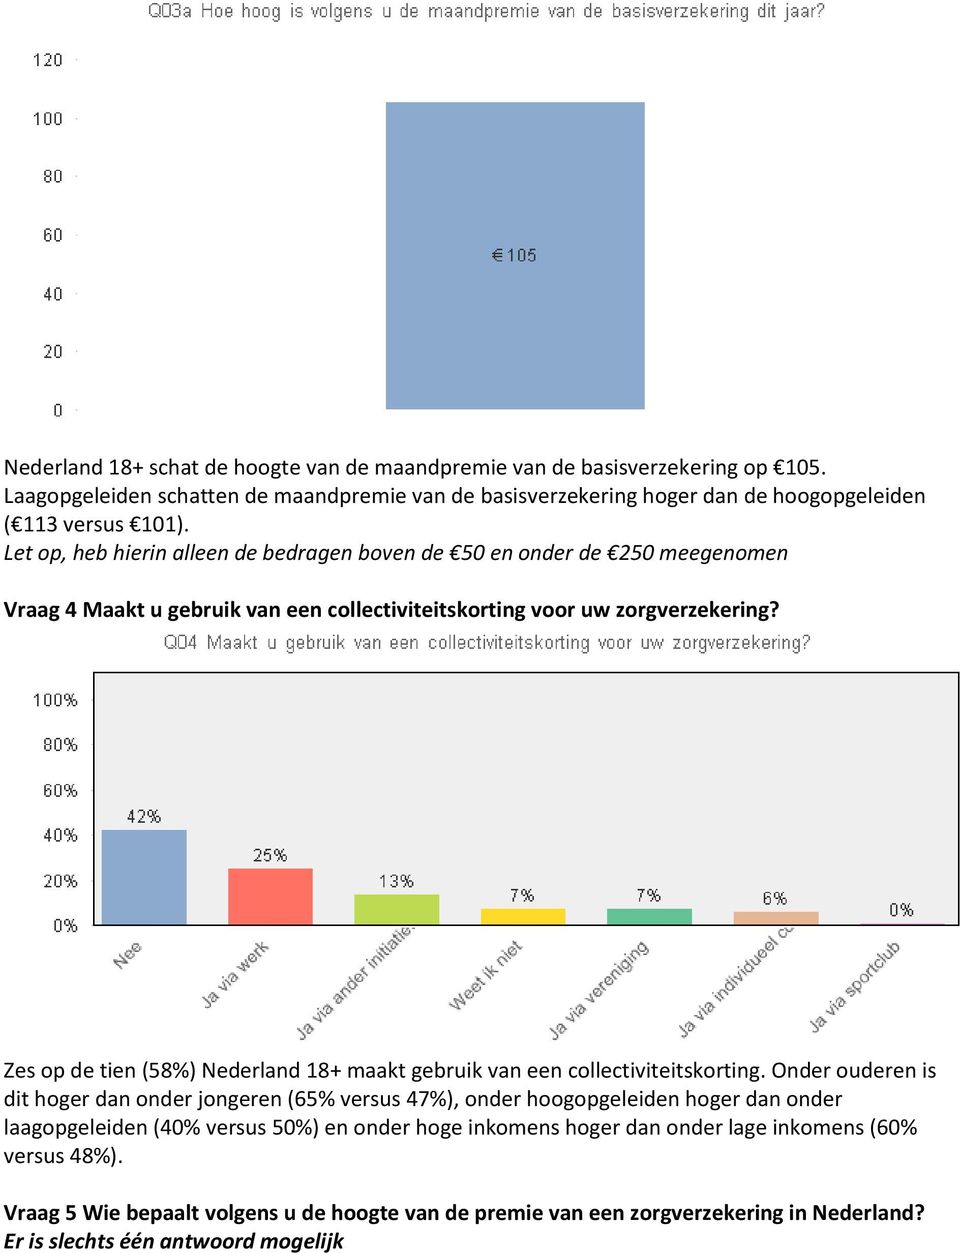 Zes op de tien (58%) Nederland 18+ maakt gebruik van een collectiviteitskorting.